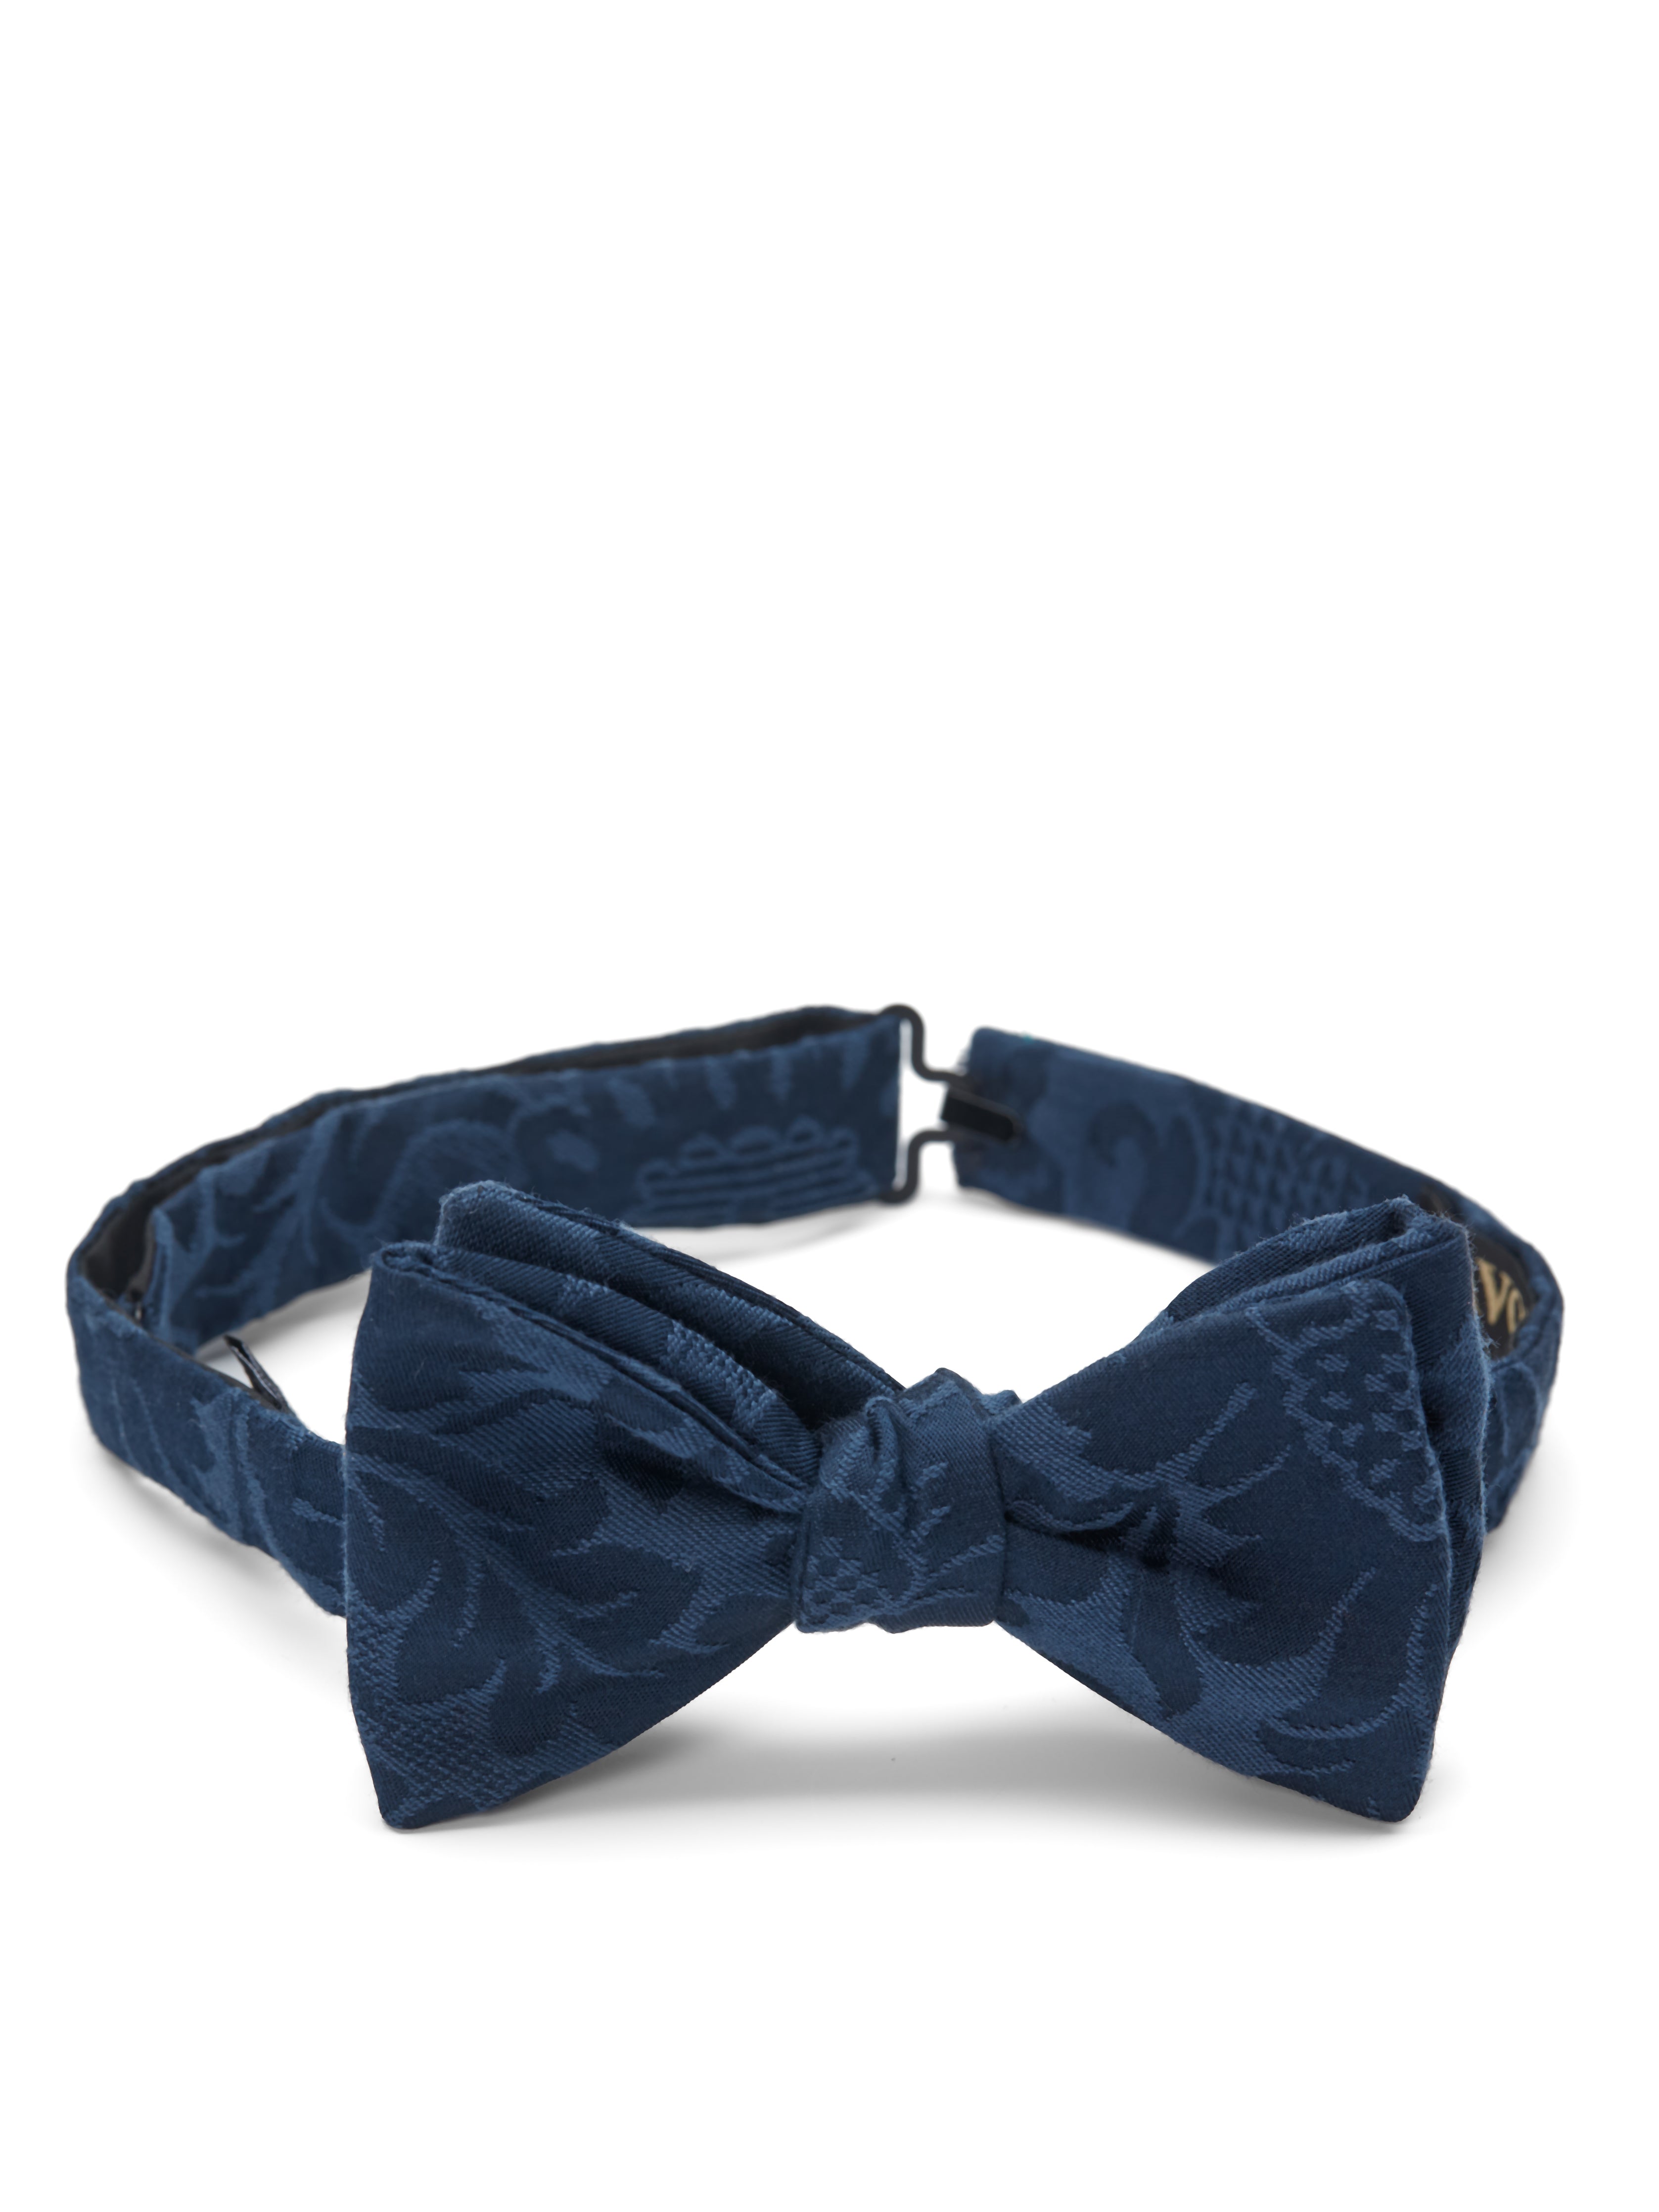 Midnight Amazon Silk Bow Tie